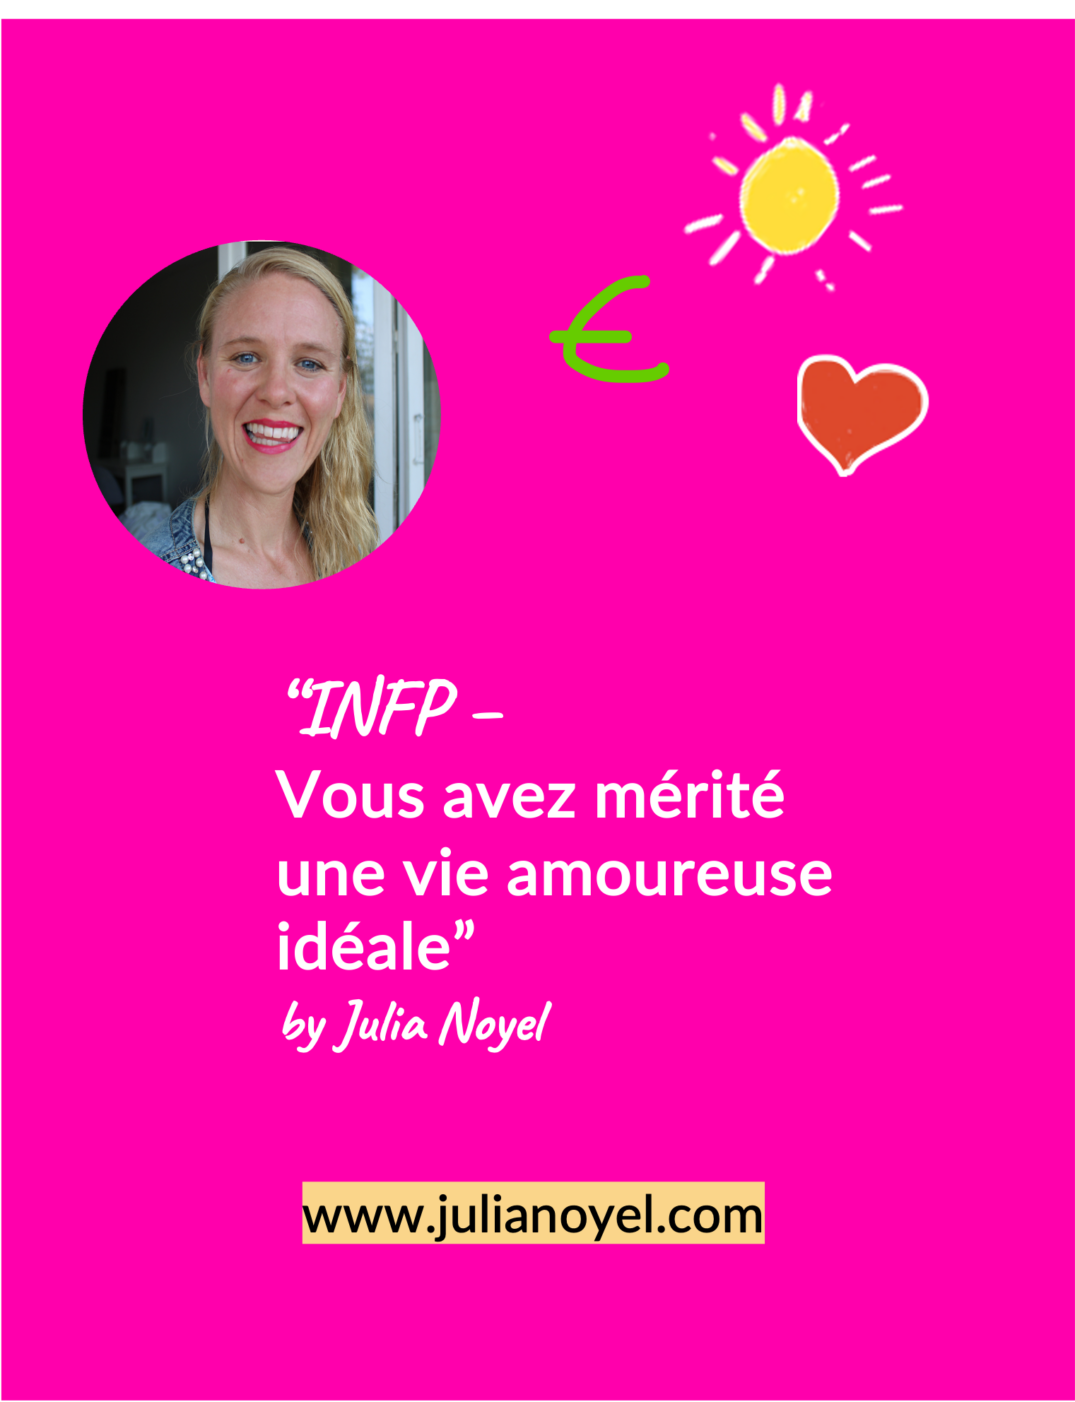 INFP – Vous avez mérité une vie amoureuse idéale by Julia Noyel